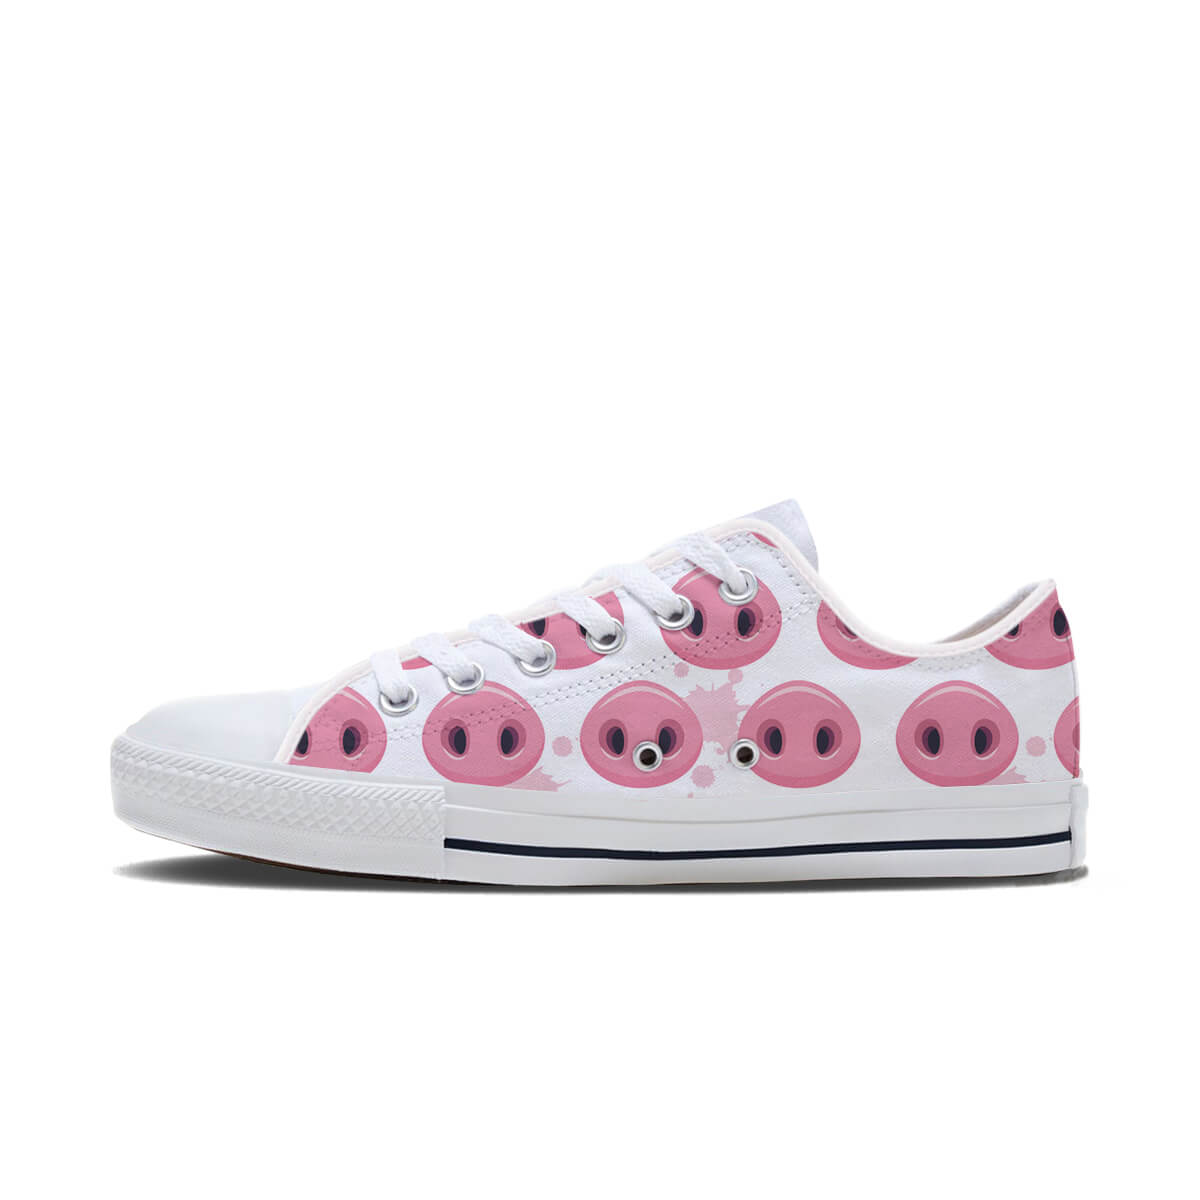 A Pig's Snout Shoes